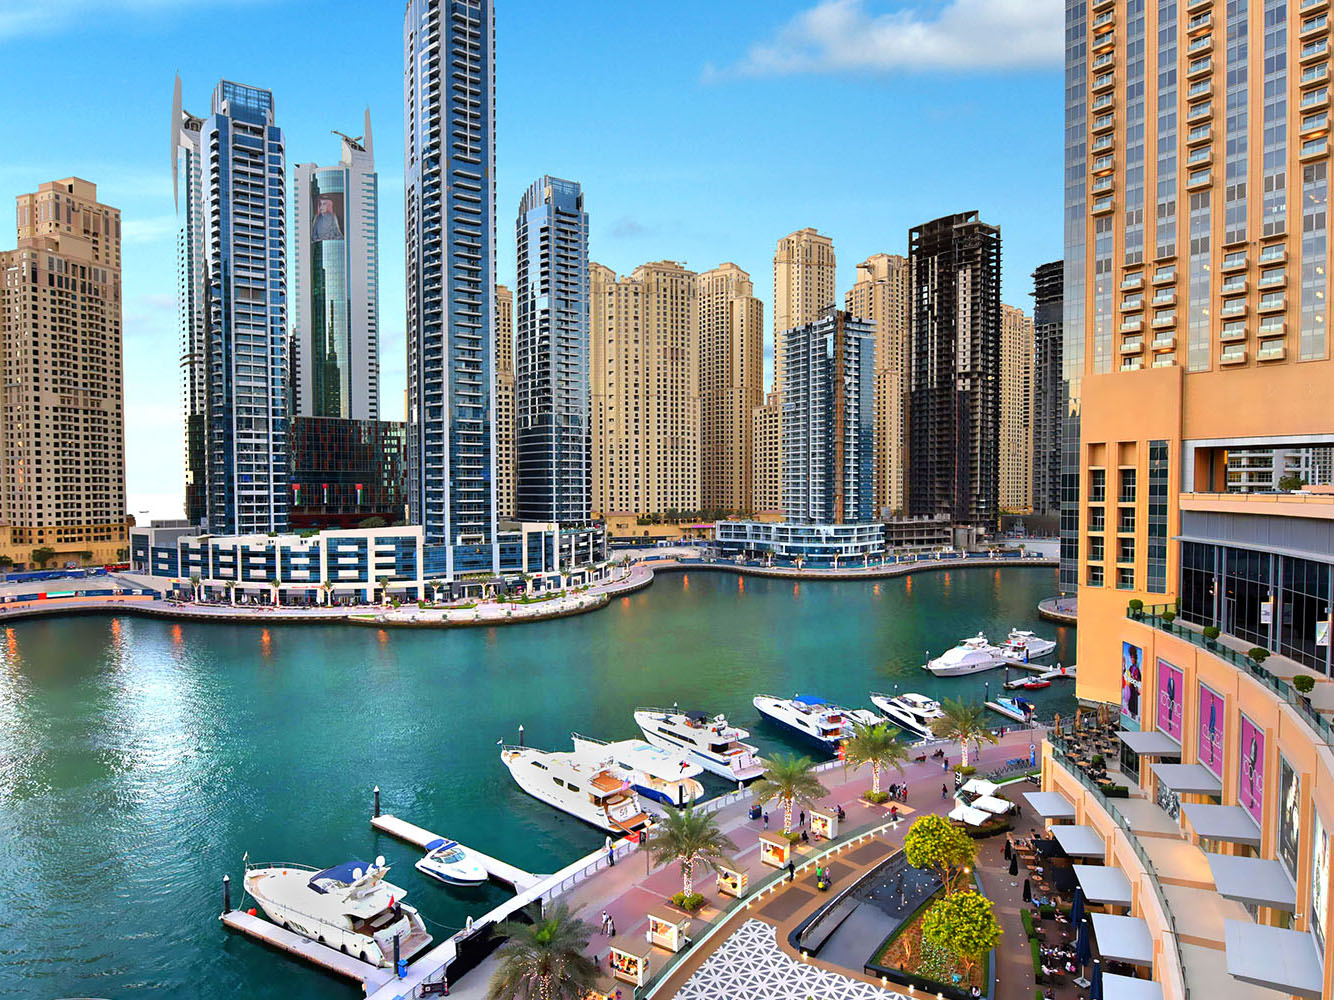 UAE Travel Guide for First Time Visitors - Dubai Marina, Dubai